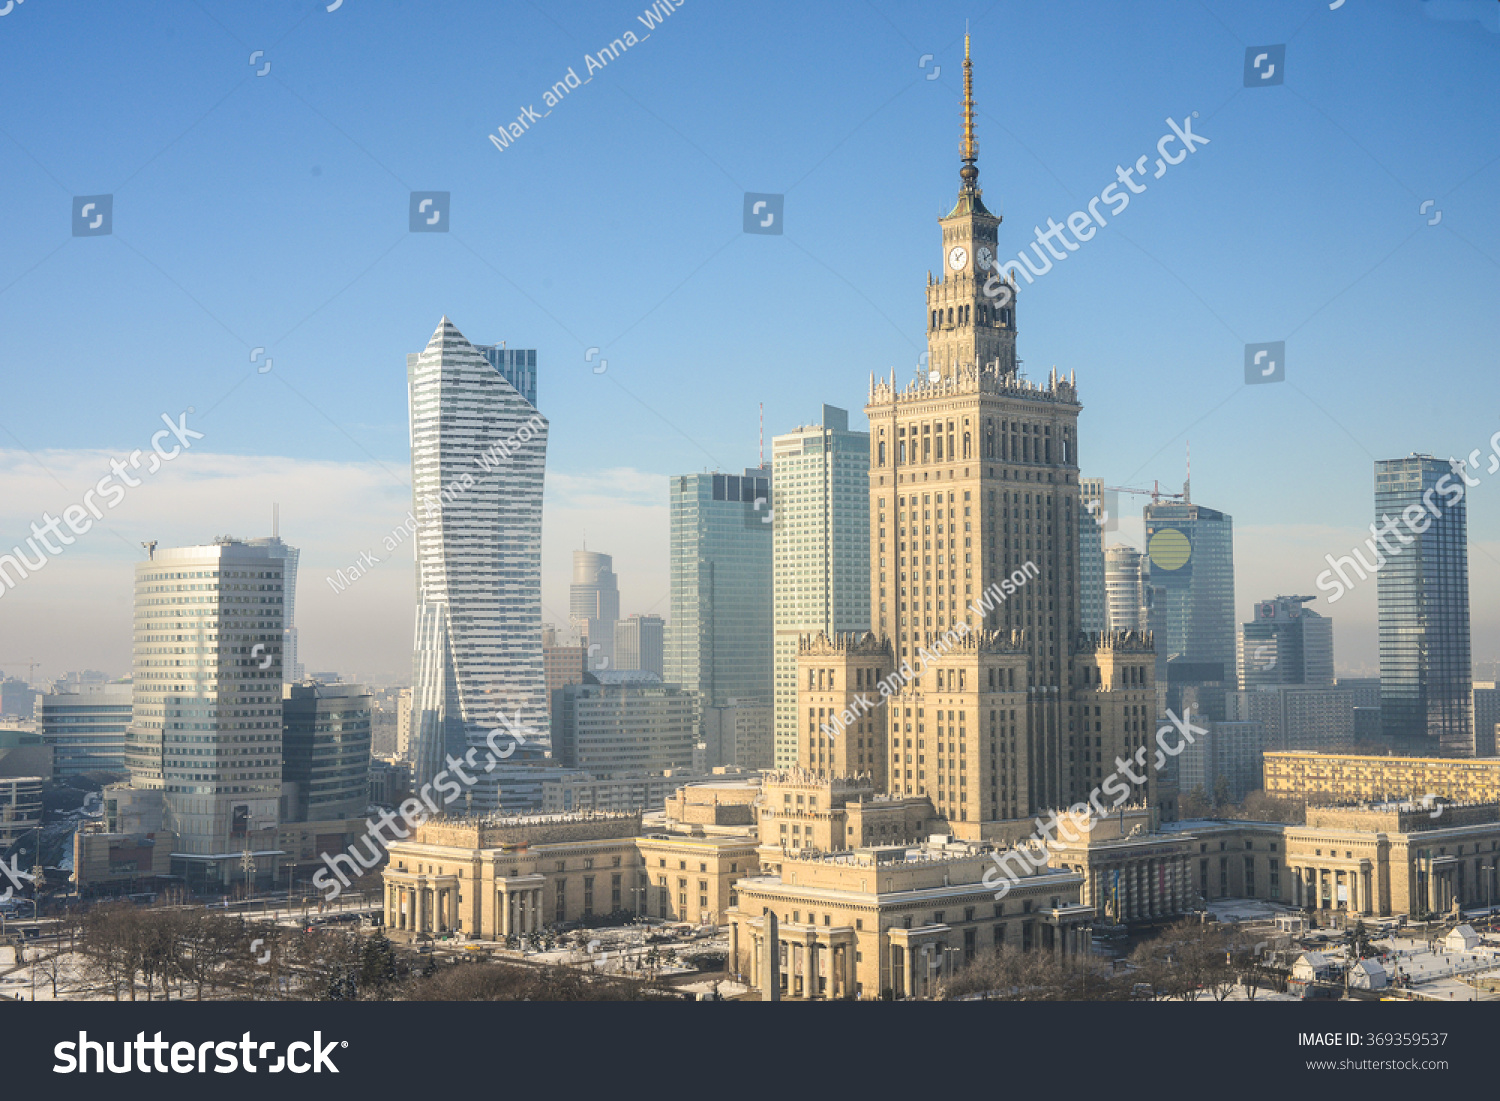 Warsaw skyline, Poland #369359537